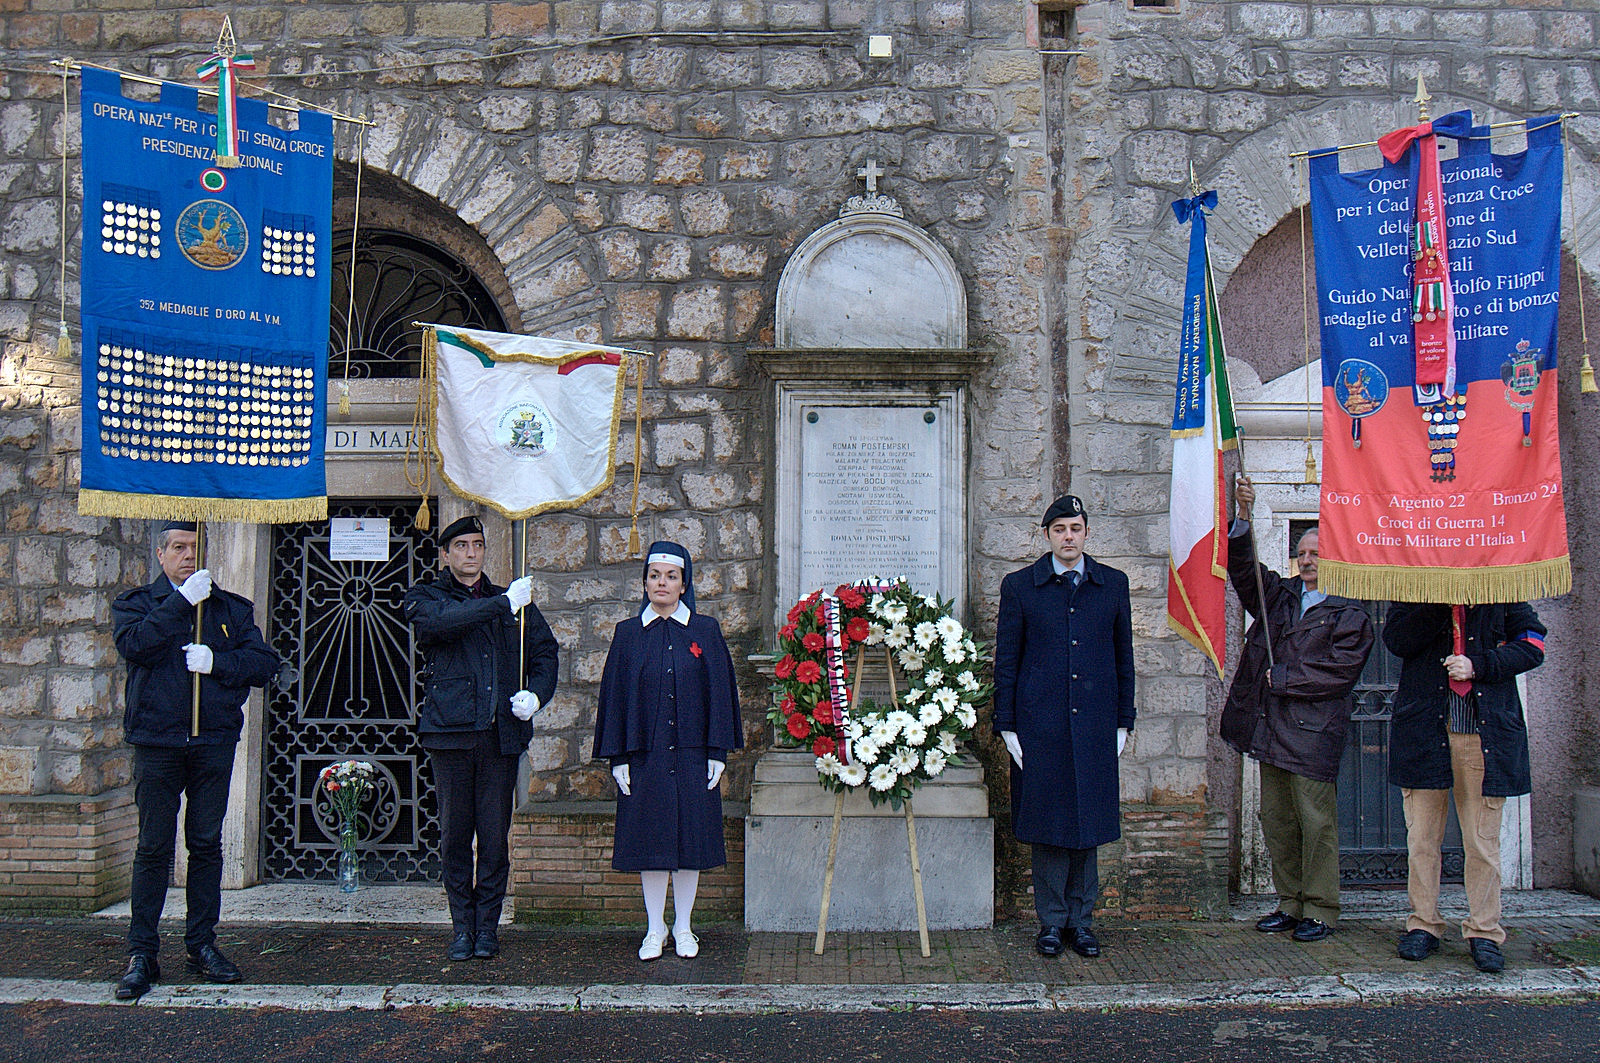 Roma, 2 dicembre 2012 Cimitero Monumentale del Vetrano- alcune immagini della cerimonia